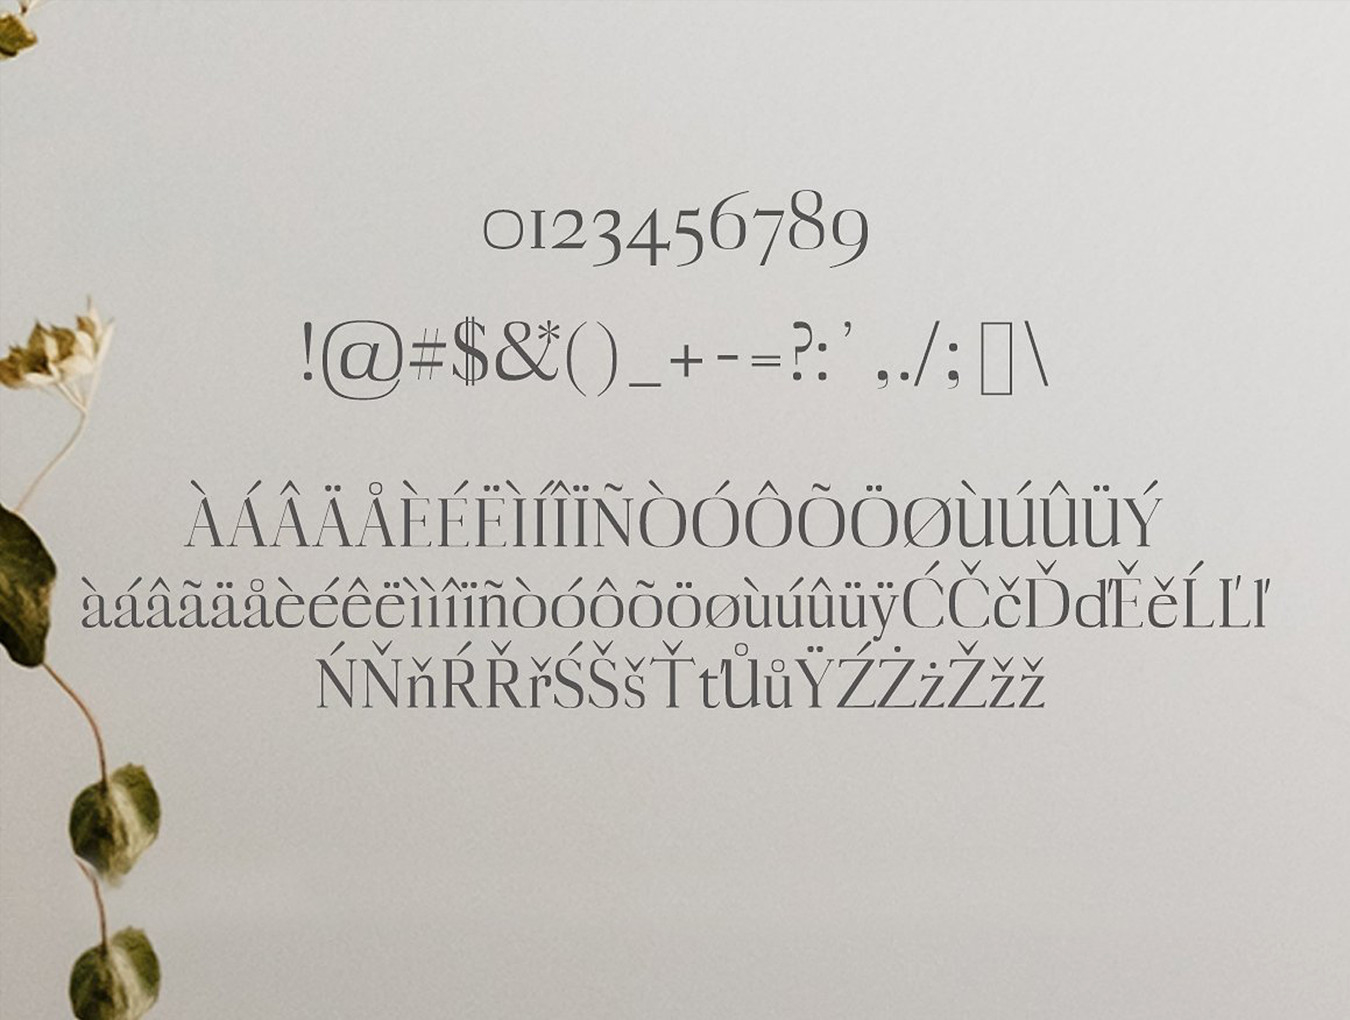 一款漂亮优雅的英文字体Myron Serif Typefac